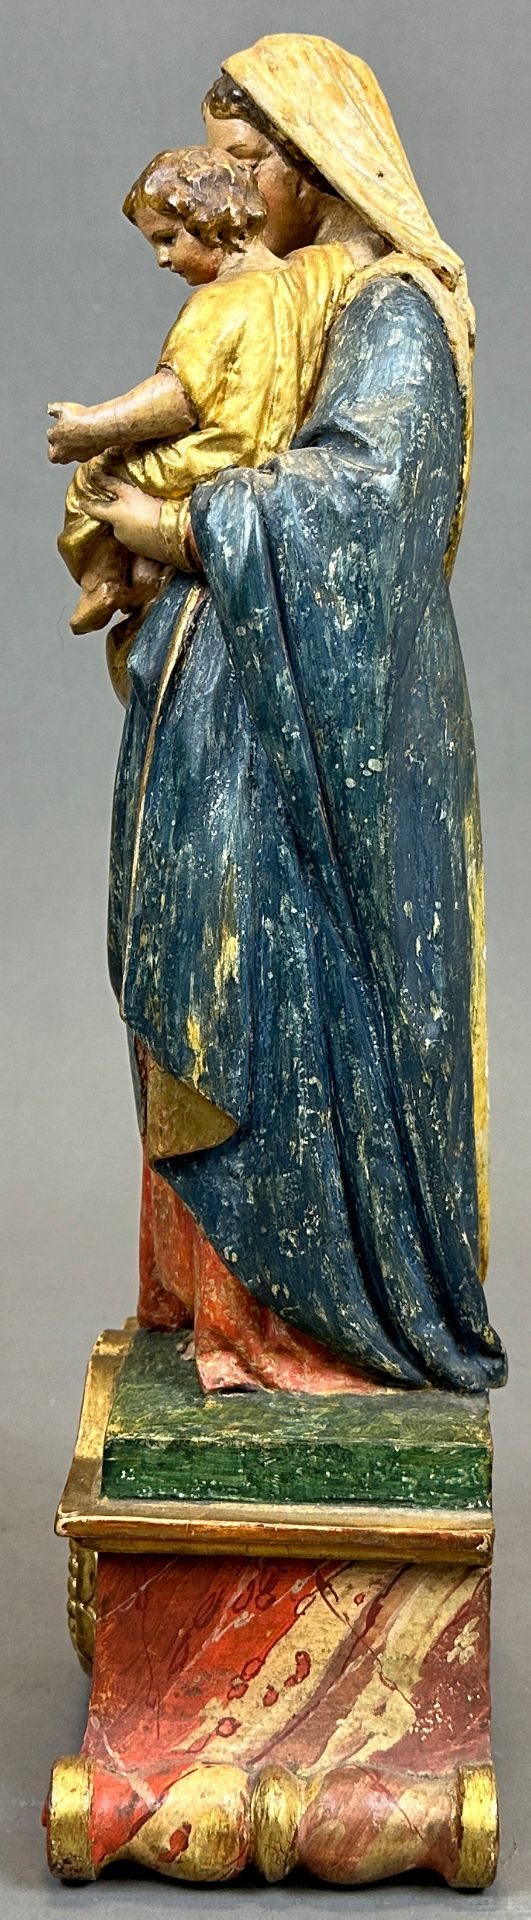 Holzfigur. Jungfrau Maria mit Christuskind. Mitte 18. Jahrhundert. Bayern. - Bild 2 aus 10